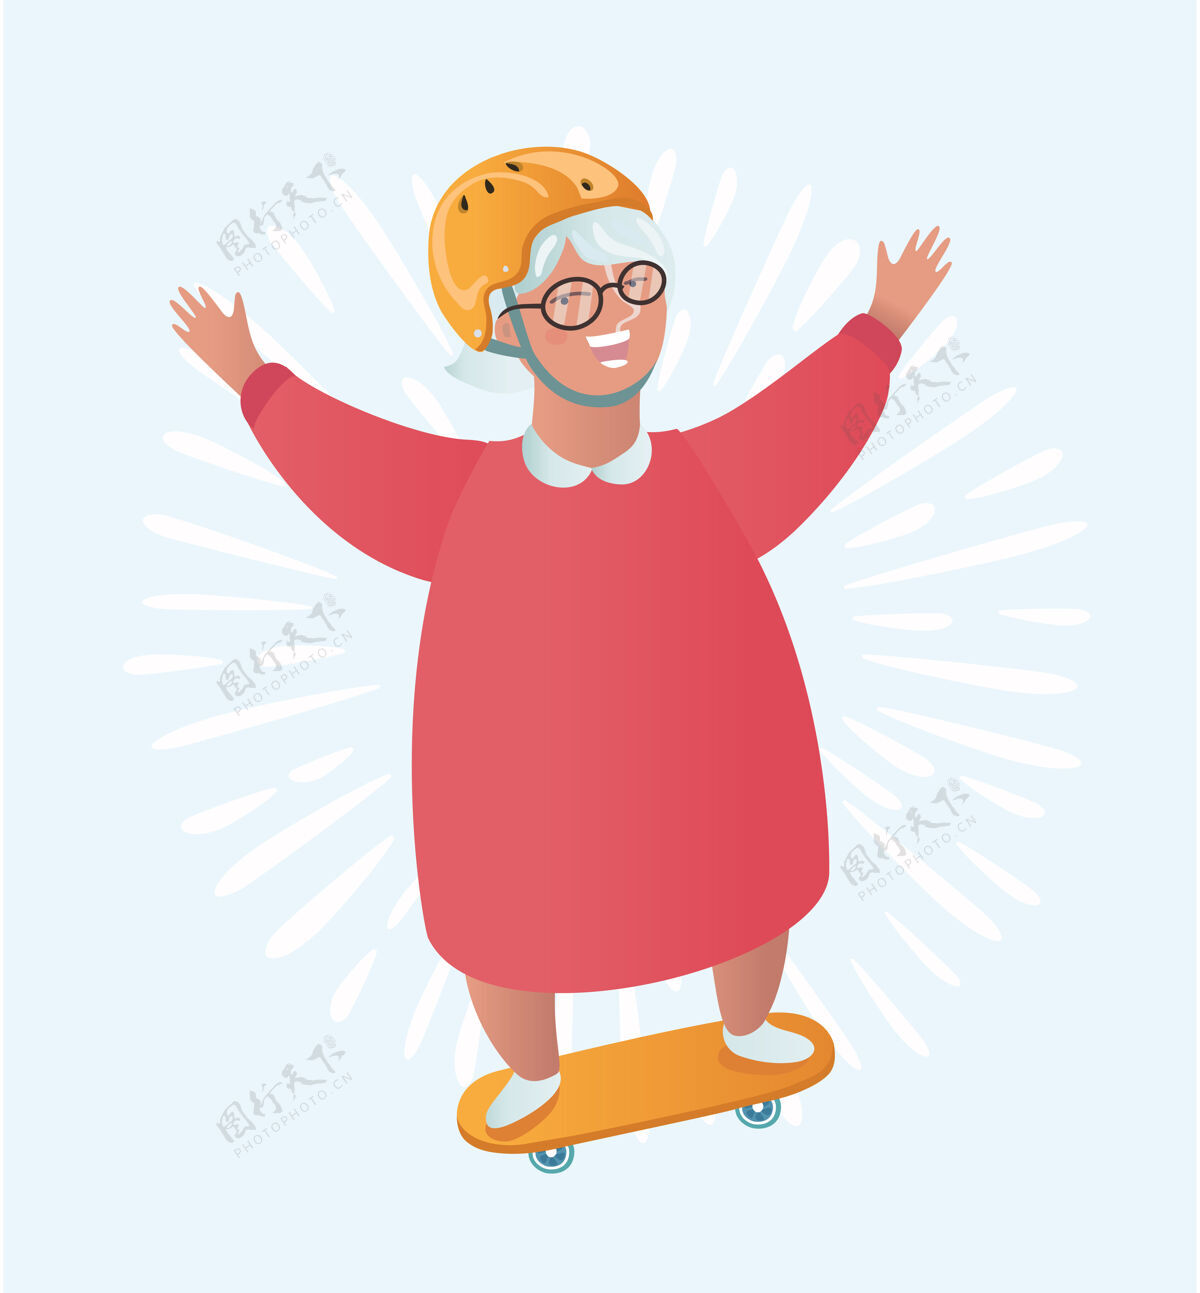 漫画奶奶骑着溜冰鞋的有趣卡通插图酷滑板奶奶